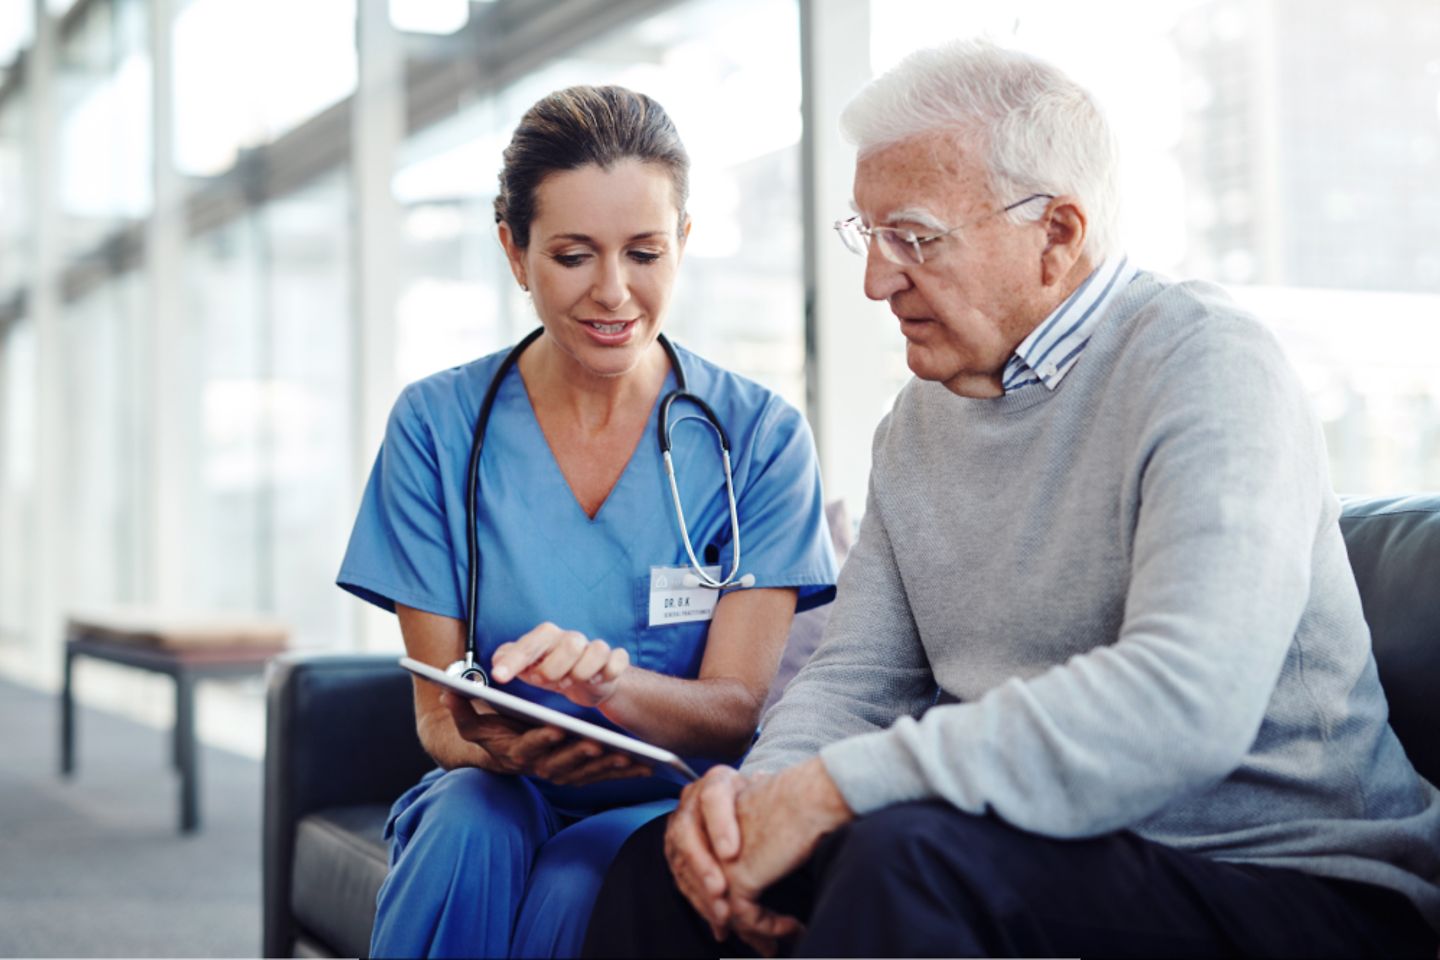 Empleada del hospital con bata azul muestra algo en una tableta a un hombre de pelo canoso